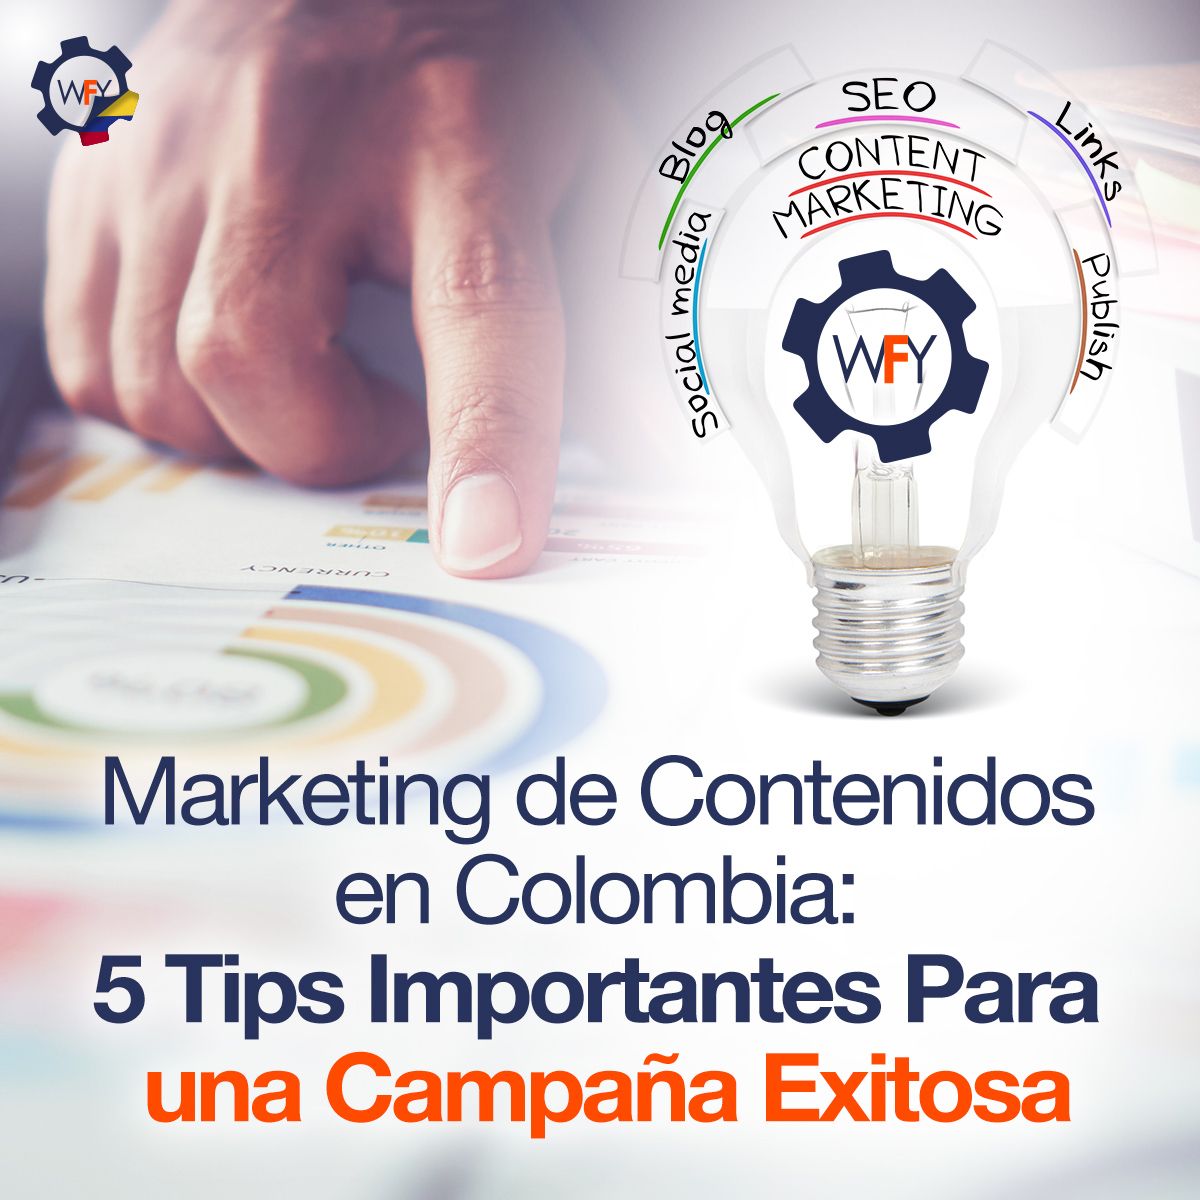 Marketing de Contenidos en Colombia: 5 Tips Importantes Para una Campaña Exitosa